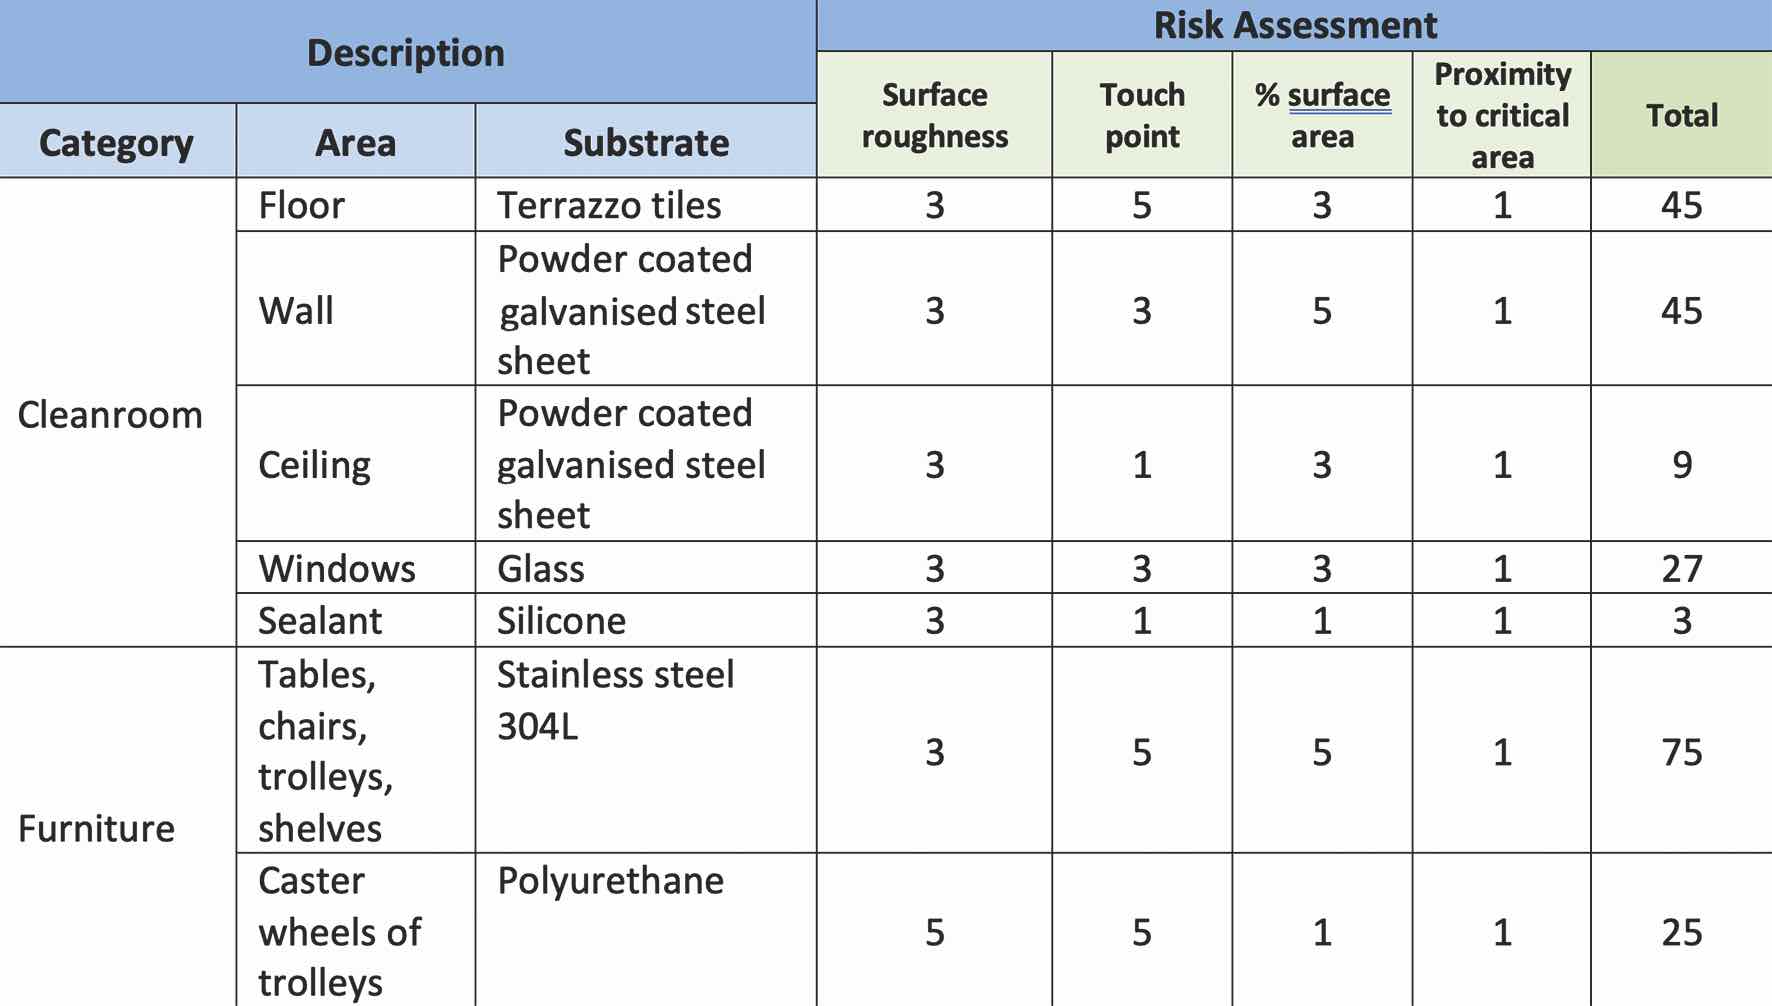 Table 2: Risk assessment